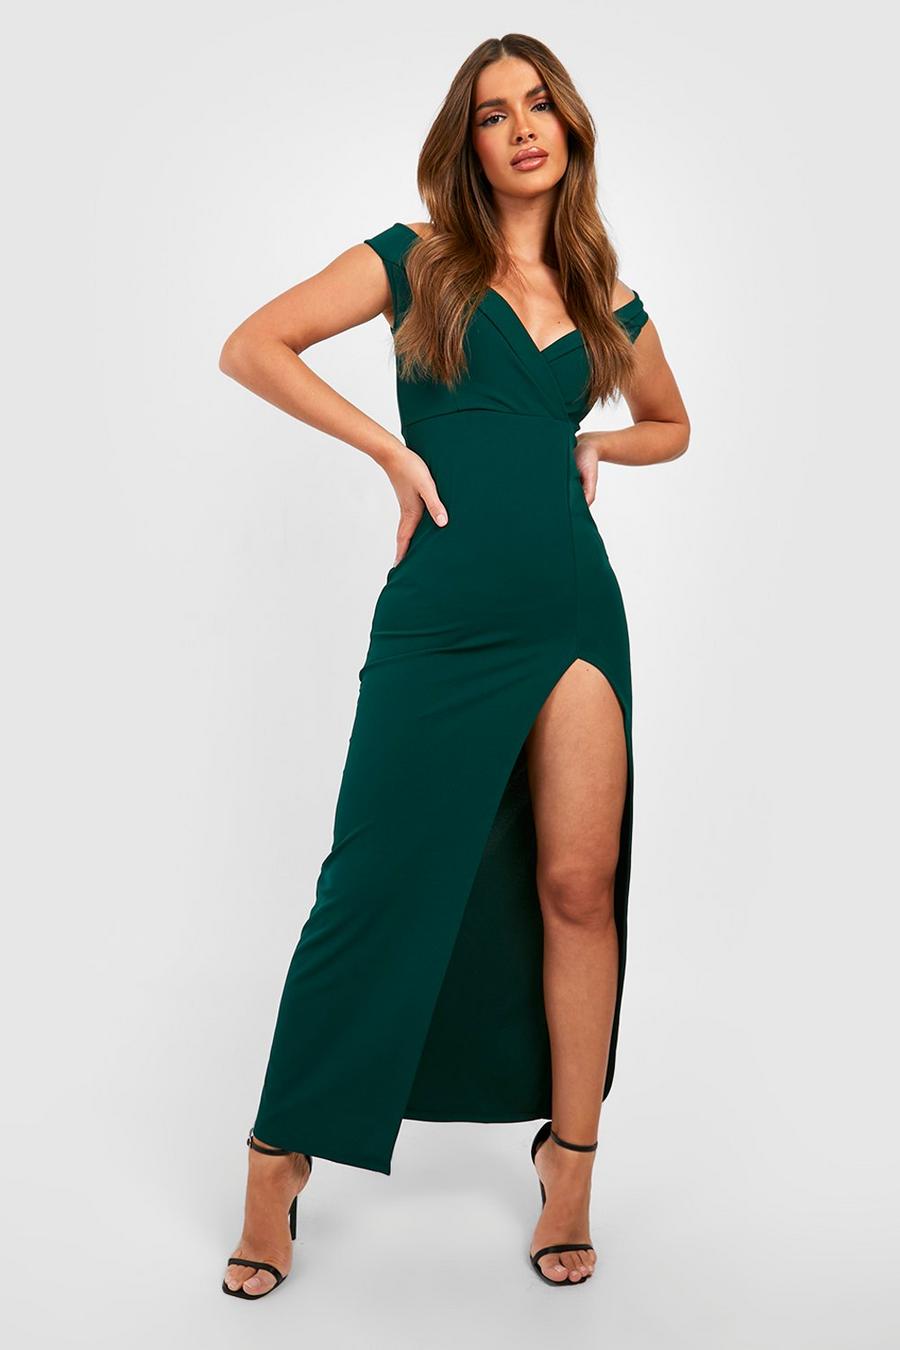 Emerald green Wrap Off The Shoulder Maxi Bridesmaid Dress